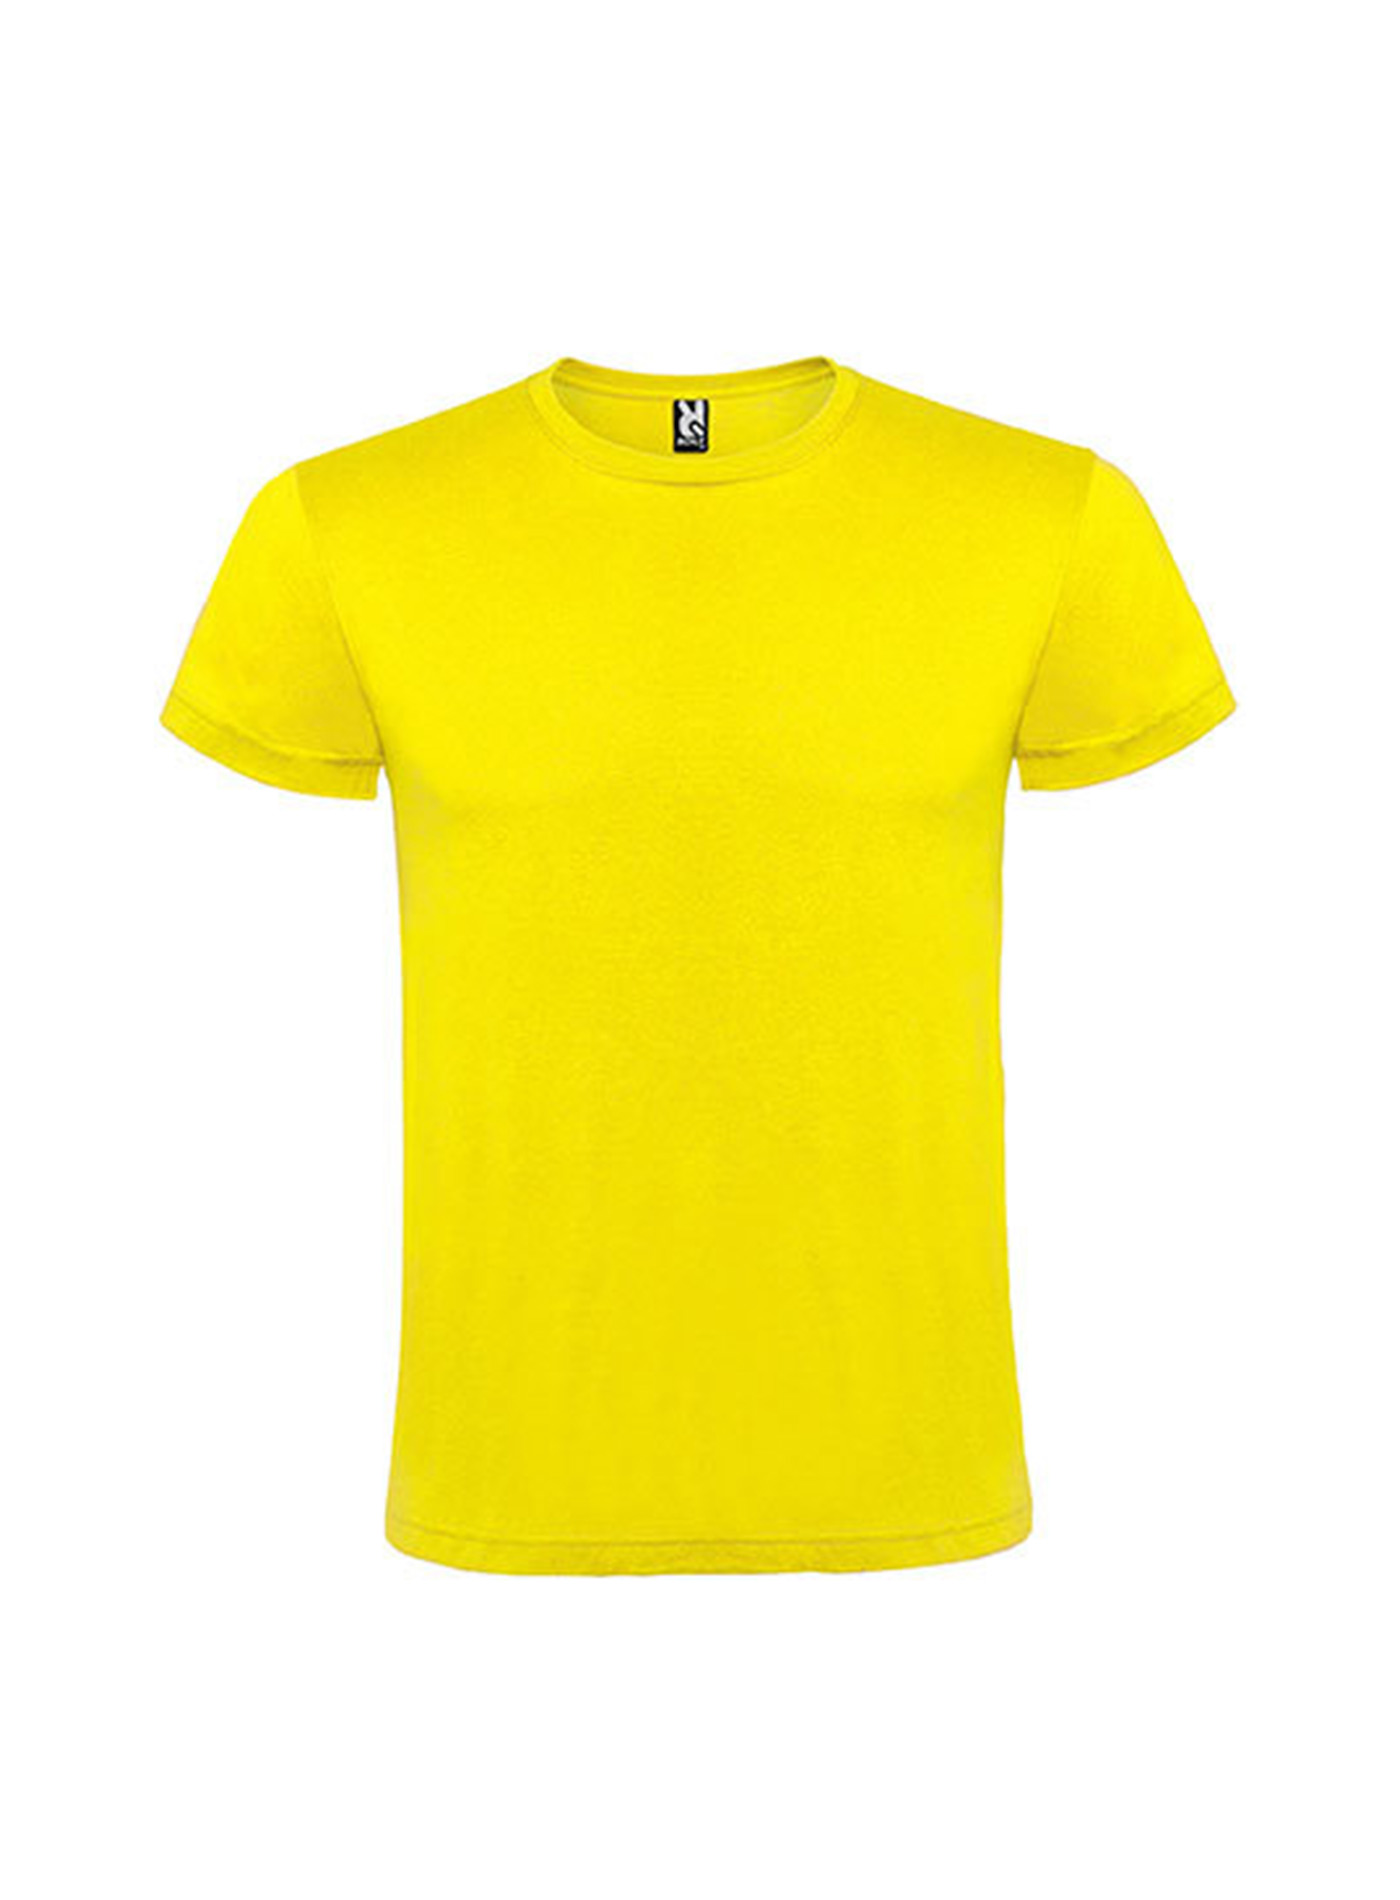 Pánské tričko Roly Atomic - Žlutá S